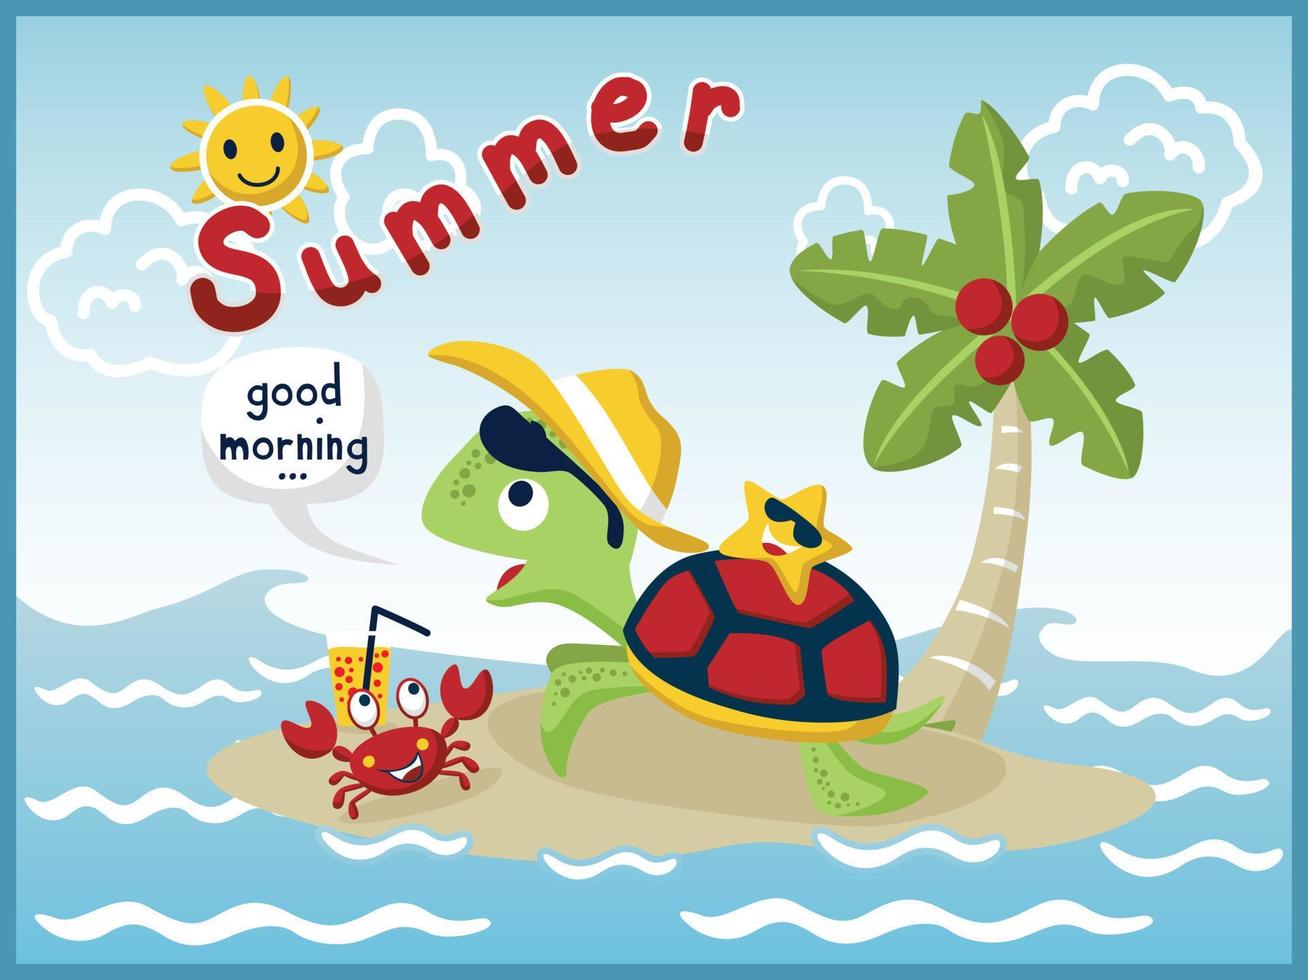 vetor de desenho animado de tartaruga engraçada com caranguejo e estrela do mar na pequena ilha, elementos de férias de verão